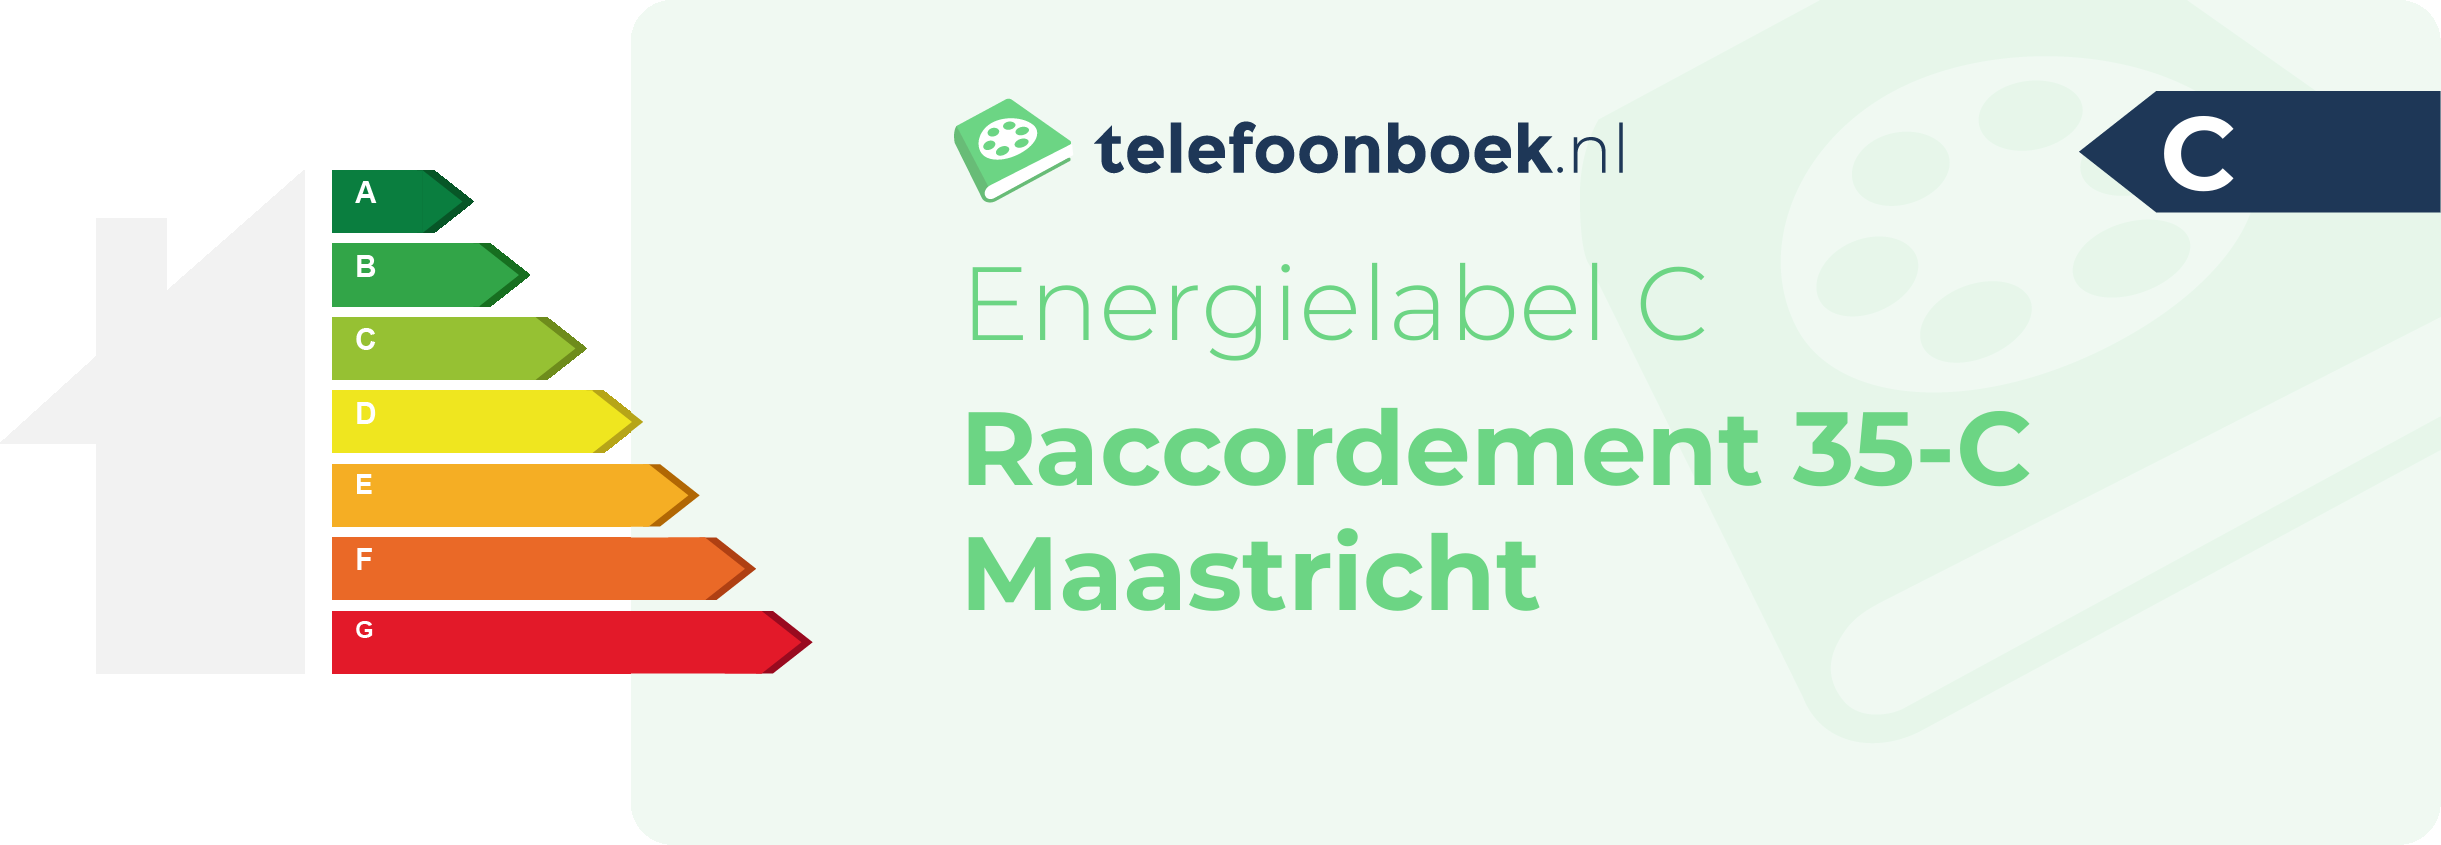 Energielabel Raccordement 35-C Maastricht